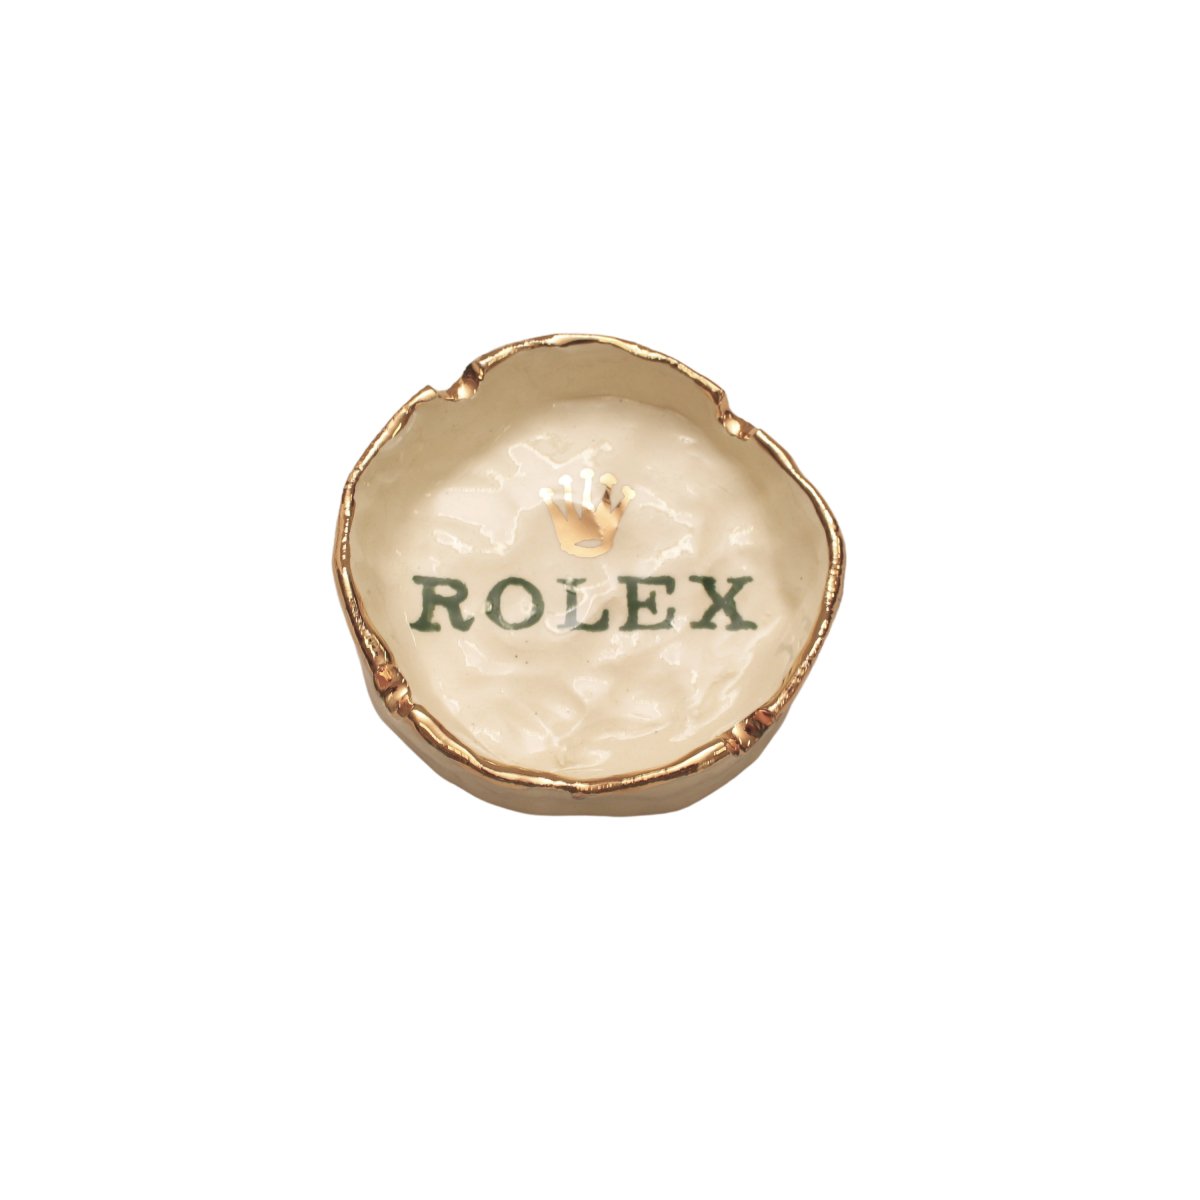 Rolex Ashtray